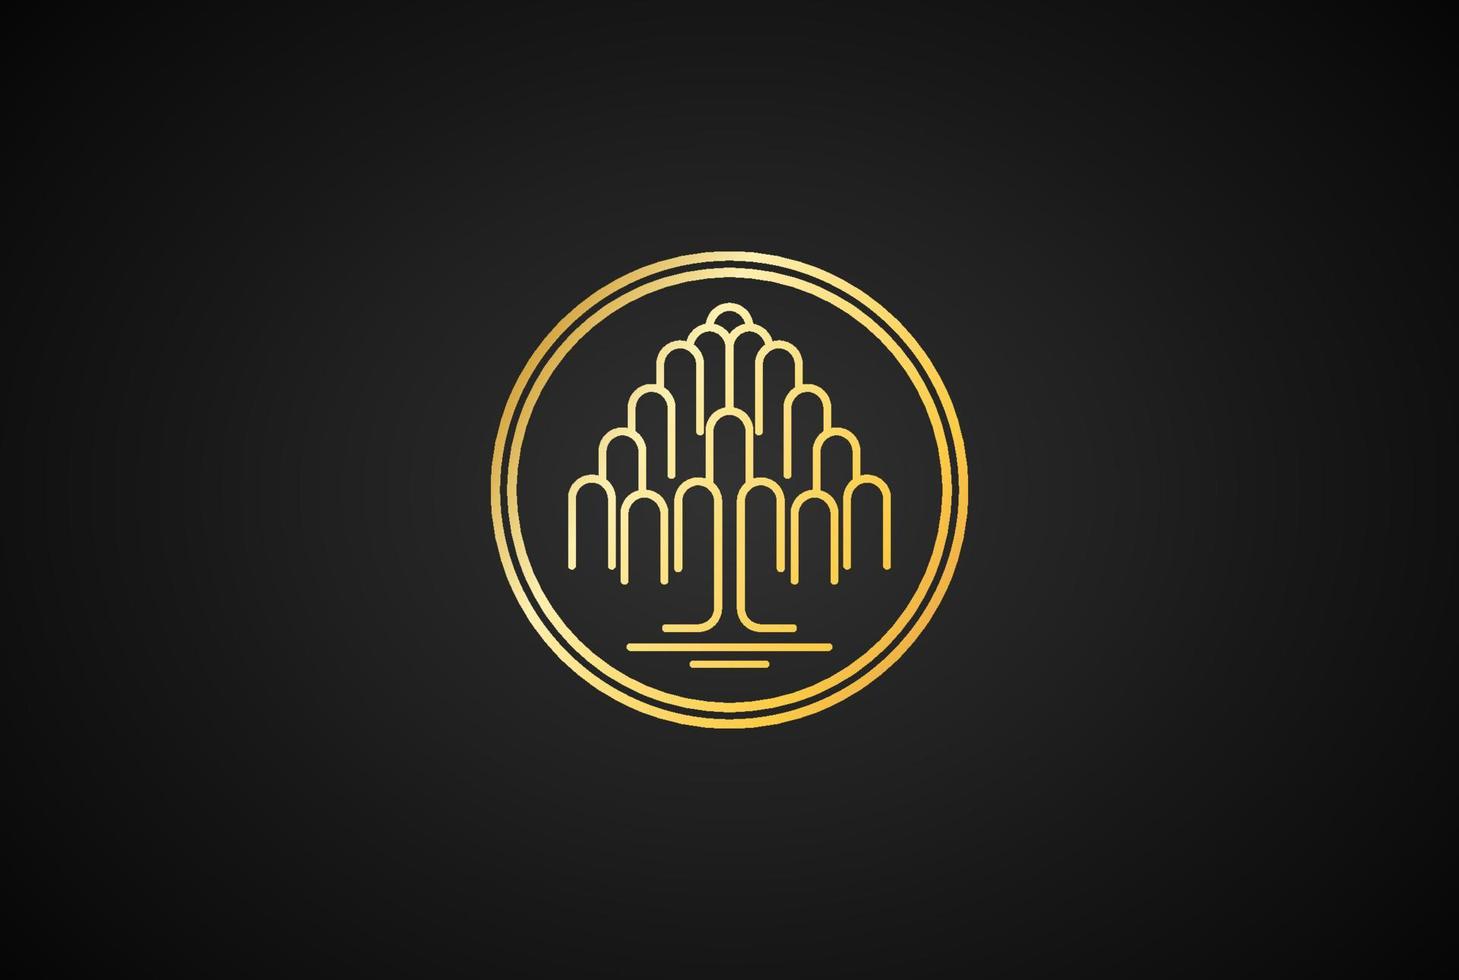 árbol genealógico de la vida geomrtric sello sello emblema roble banyan arce línea contorno logotipo diseño vector